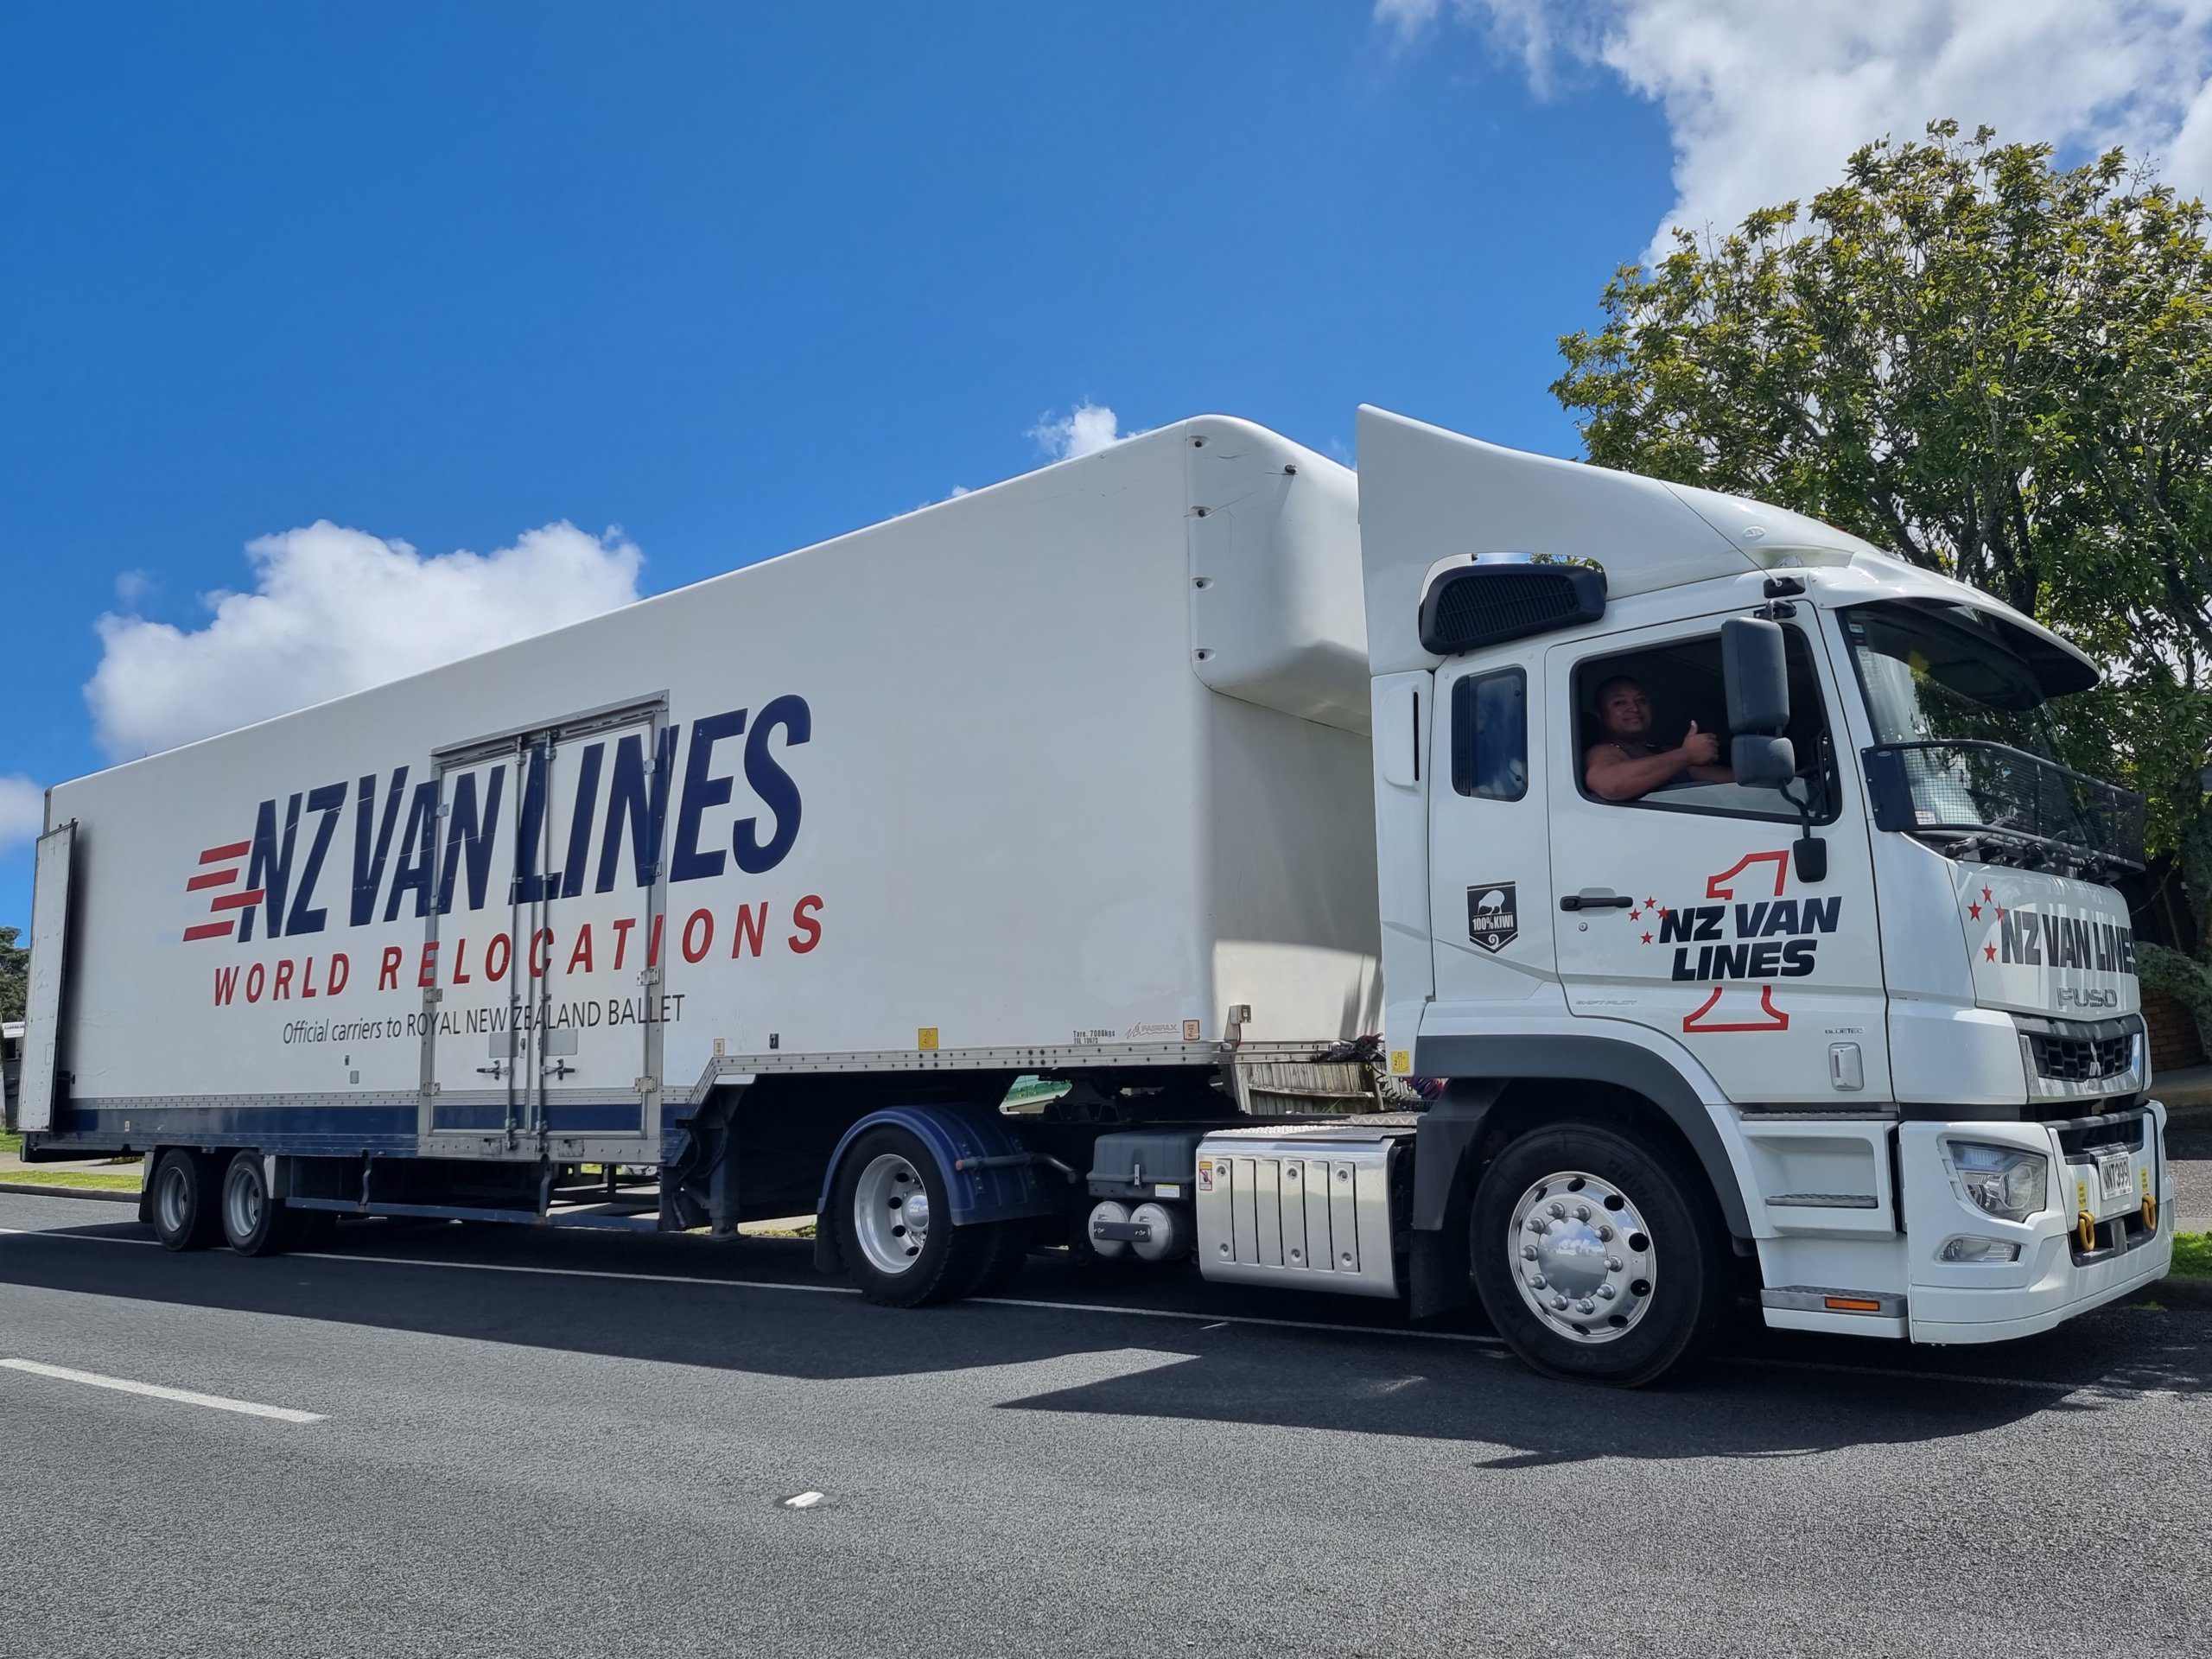 World Relocations NZ Van lines truck